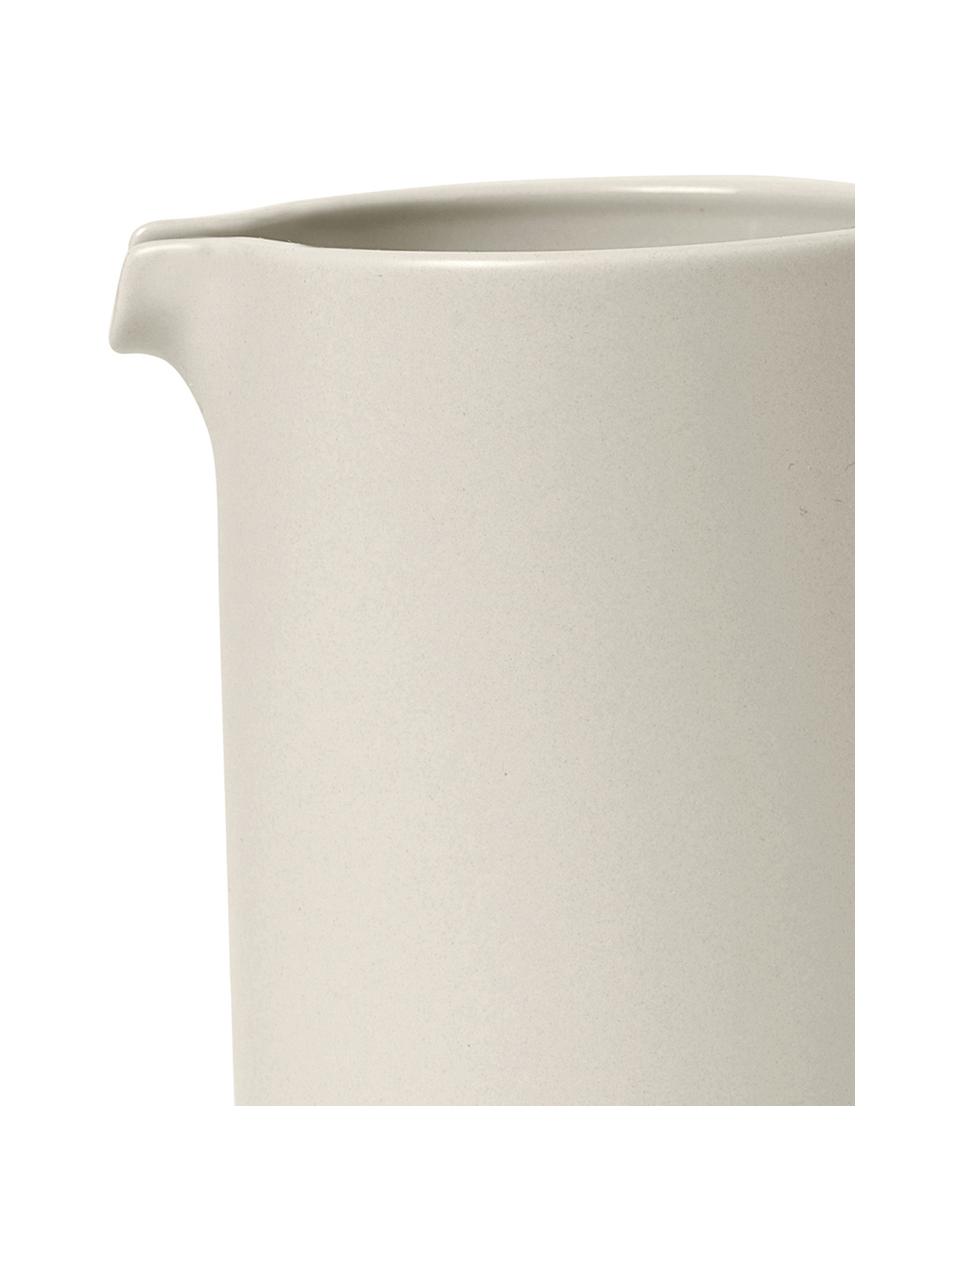 Milchkännchen Pilar in matt/glänzend, 280 ml, Keramik, Cremeweiß, Ø 8 x H 10 cm